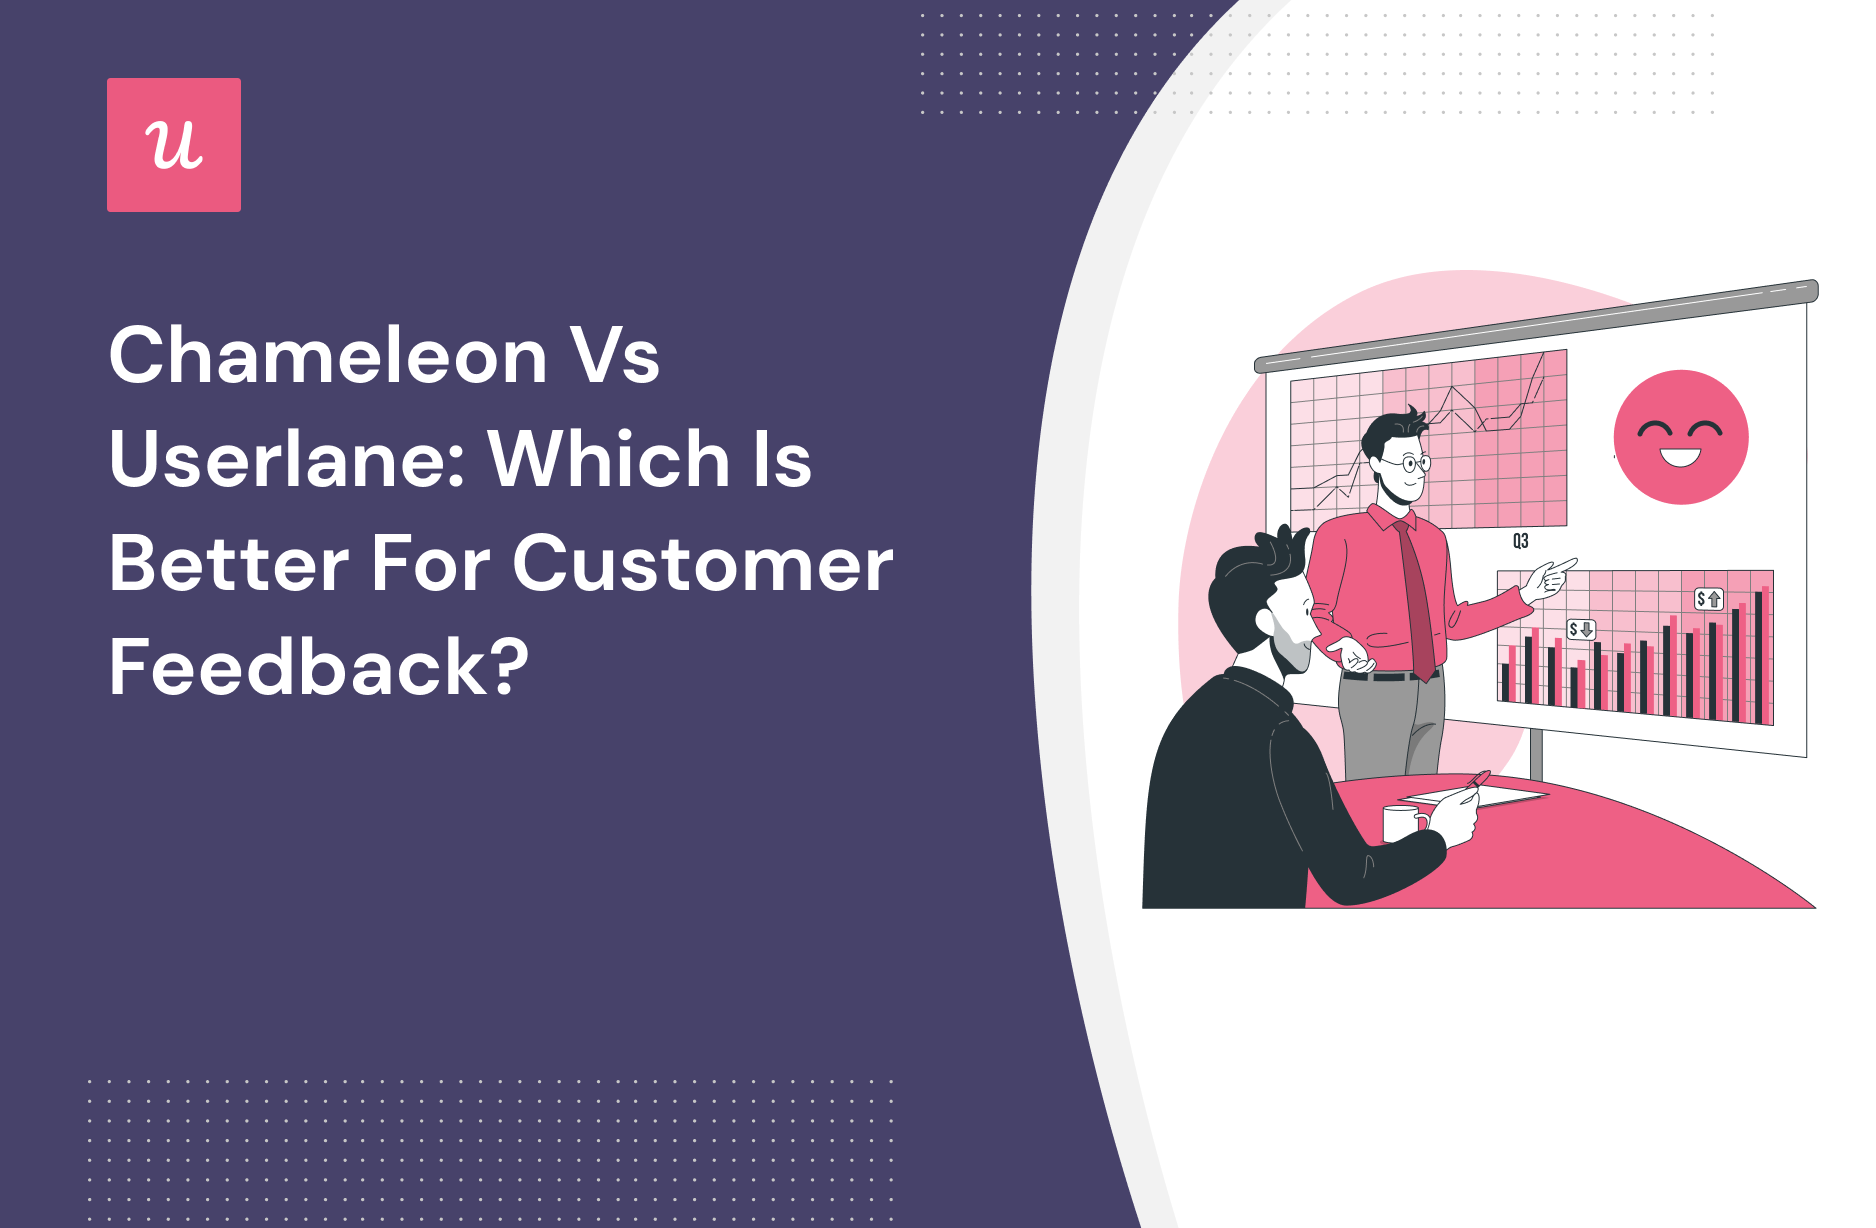 Chameleon vs Userlane: Which is Better for Customer Feedback